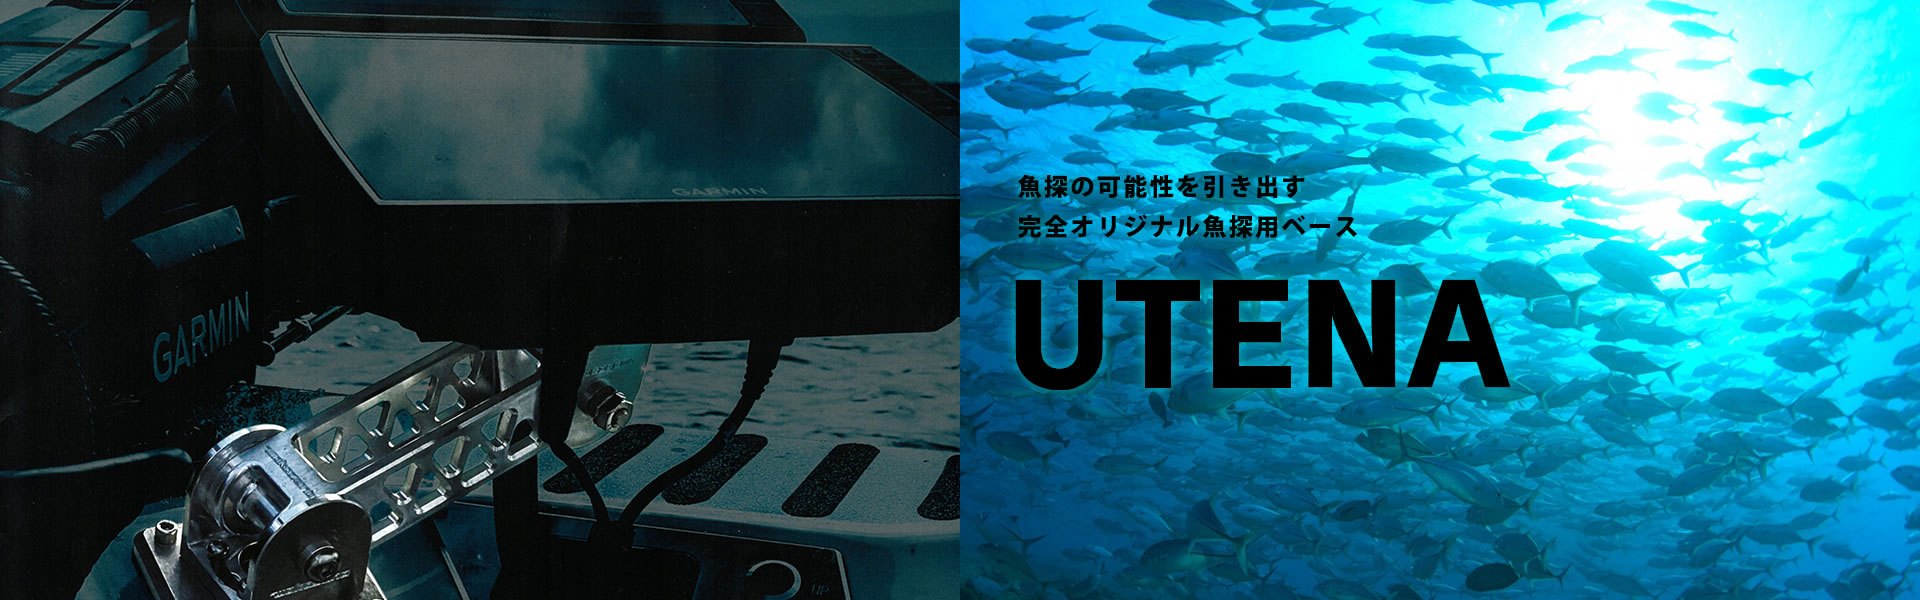 魚探の可能性を引き出す完全オリジナル魚探ベース UTENA